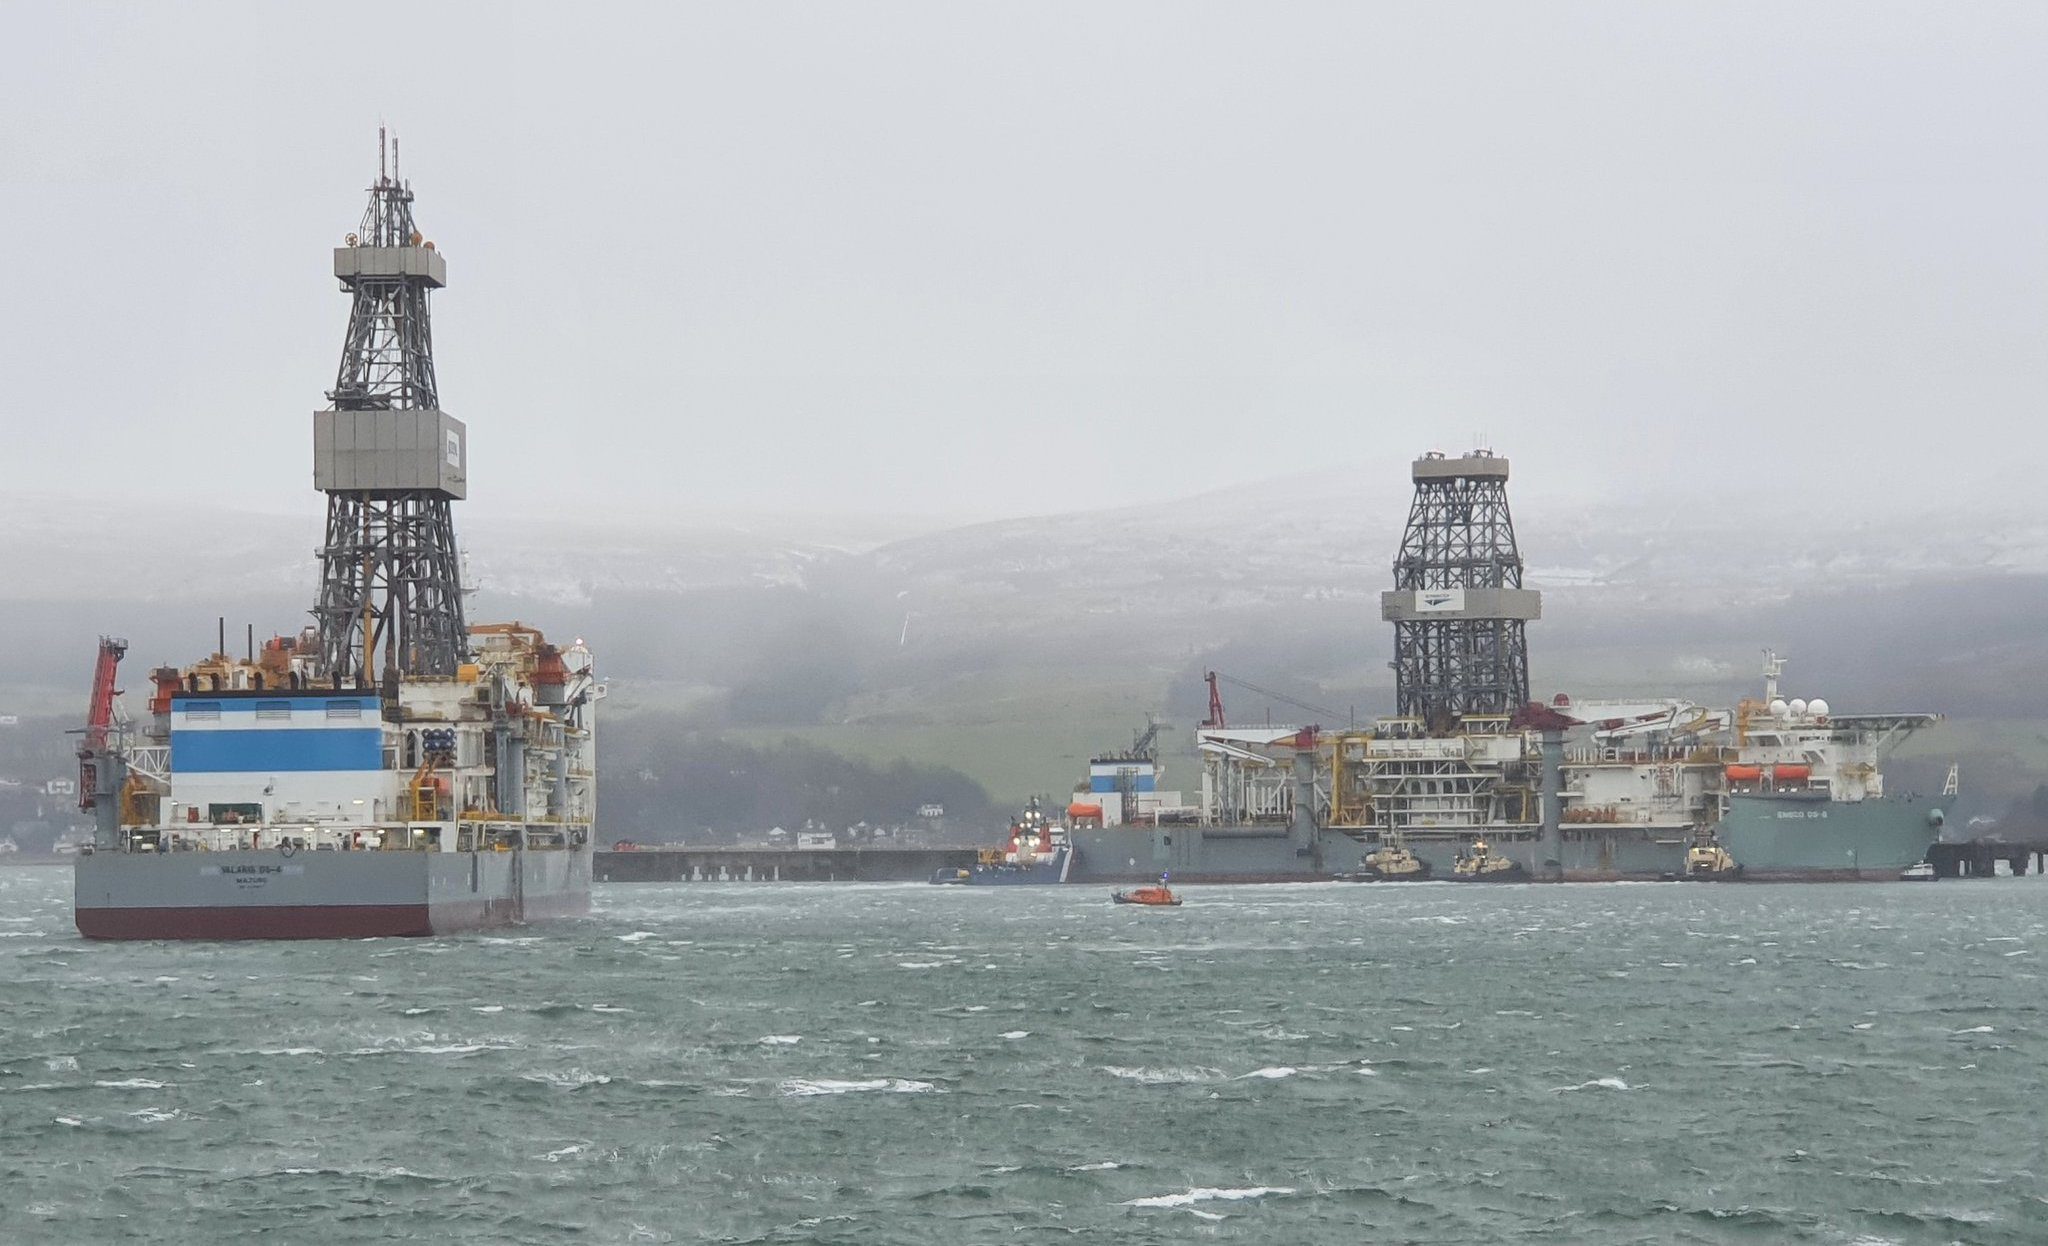 Drillship Breaks Moorings in Heavy Weather in Scotland